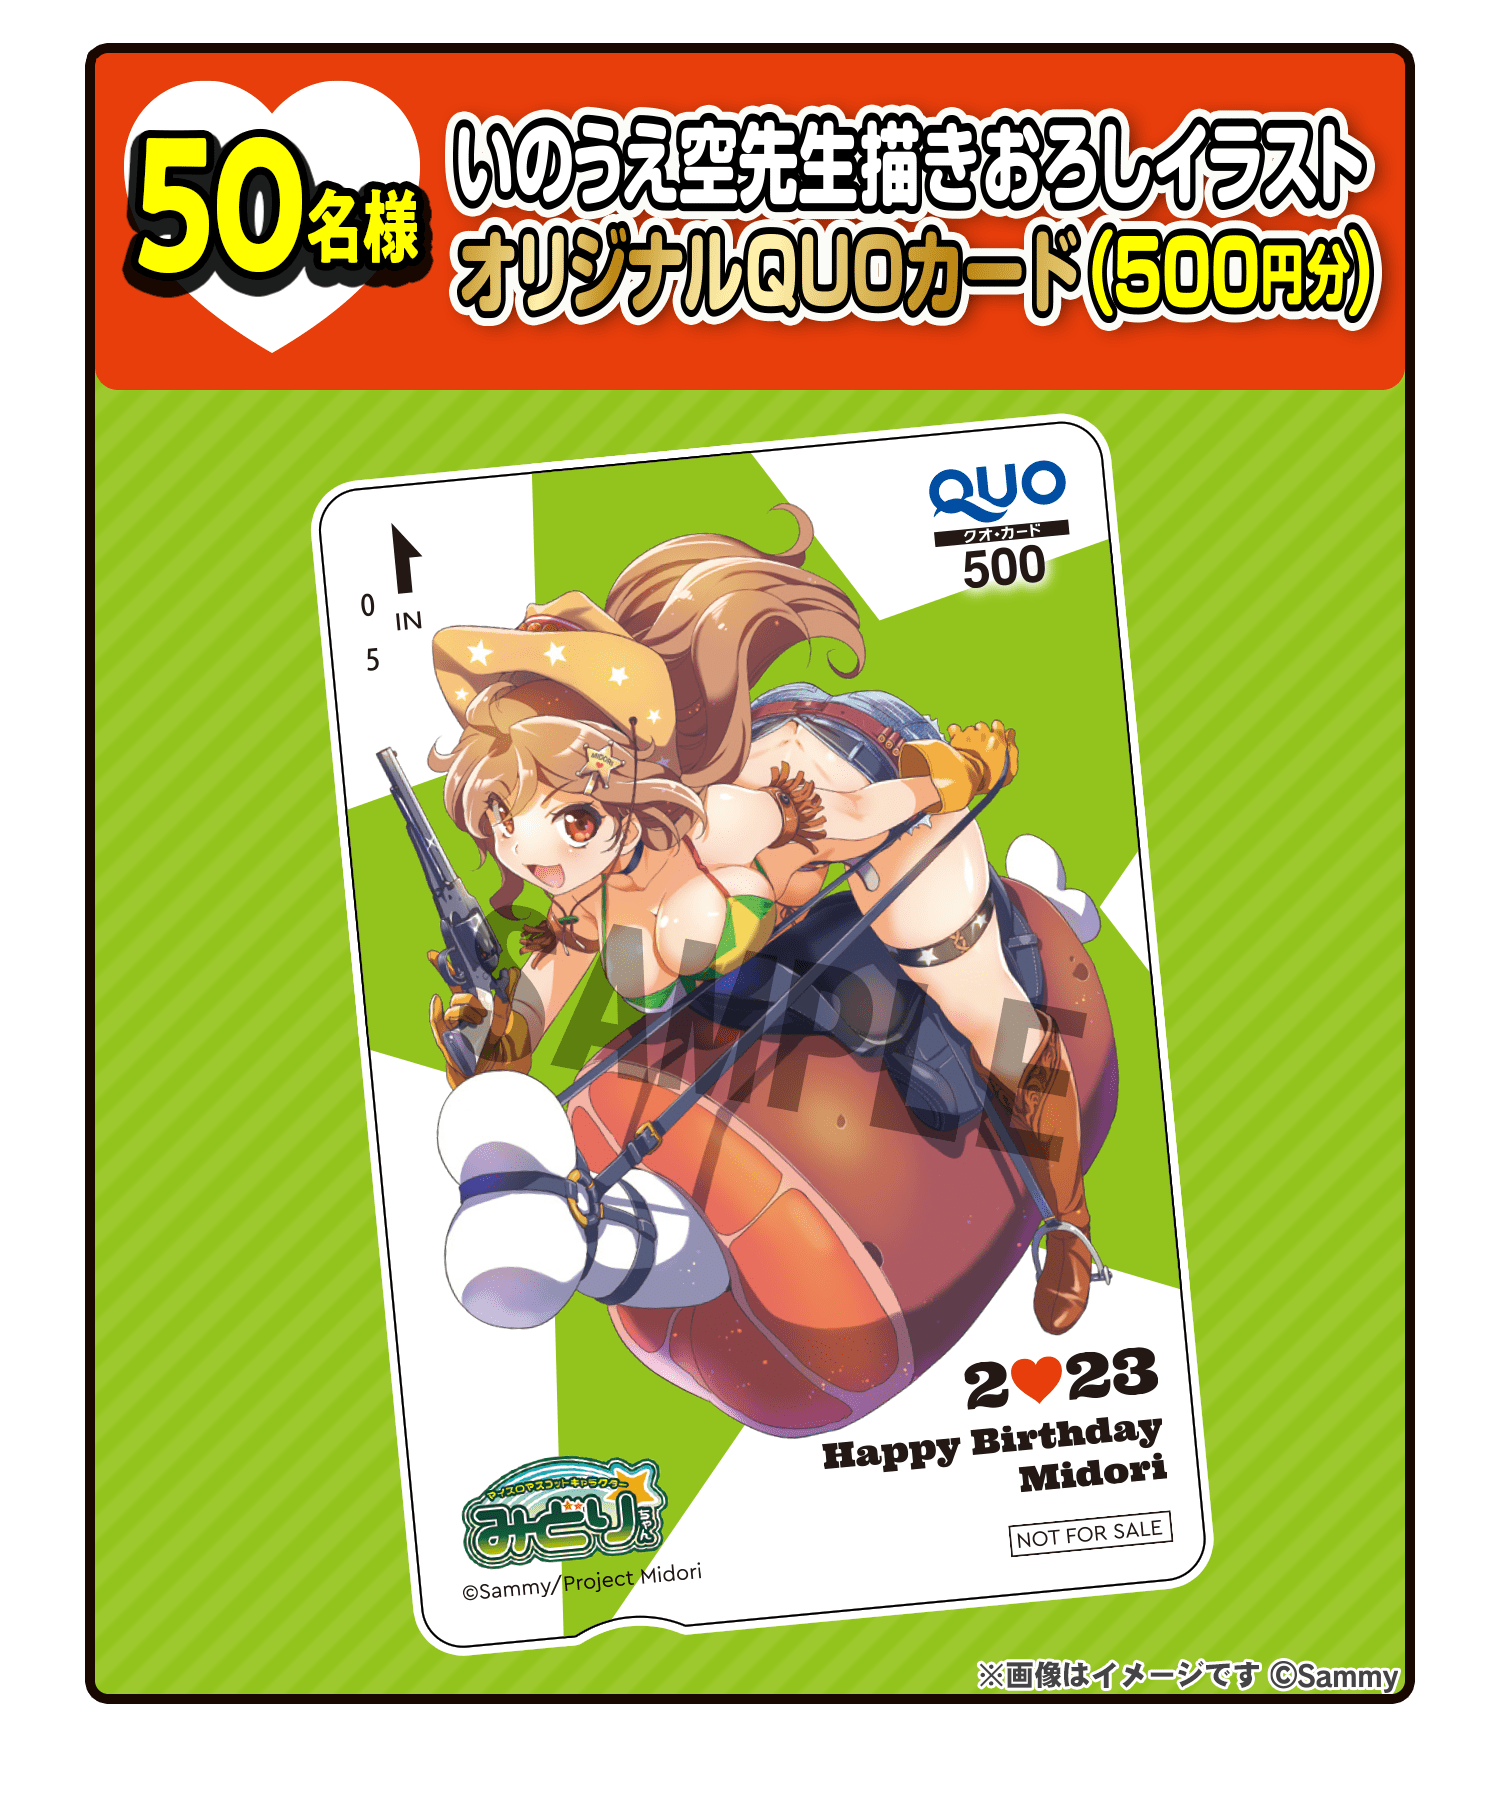 50名様 いのうえ空先生描きおろしイラストオリジナルQUOカード（500円分）